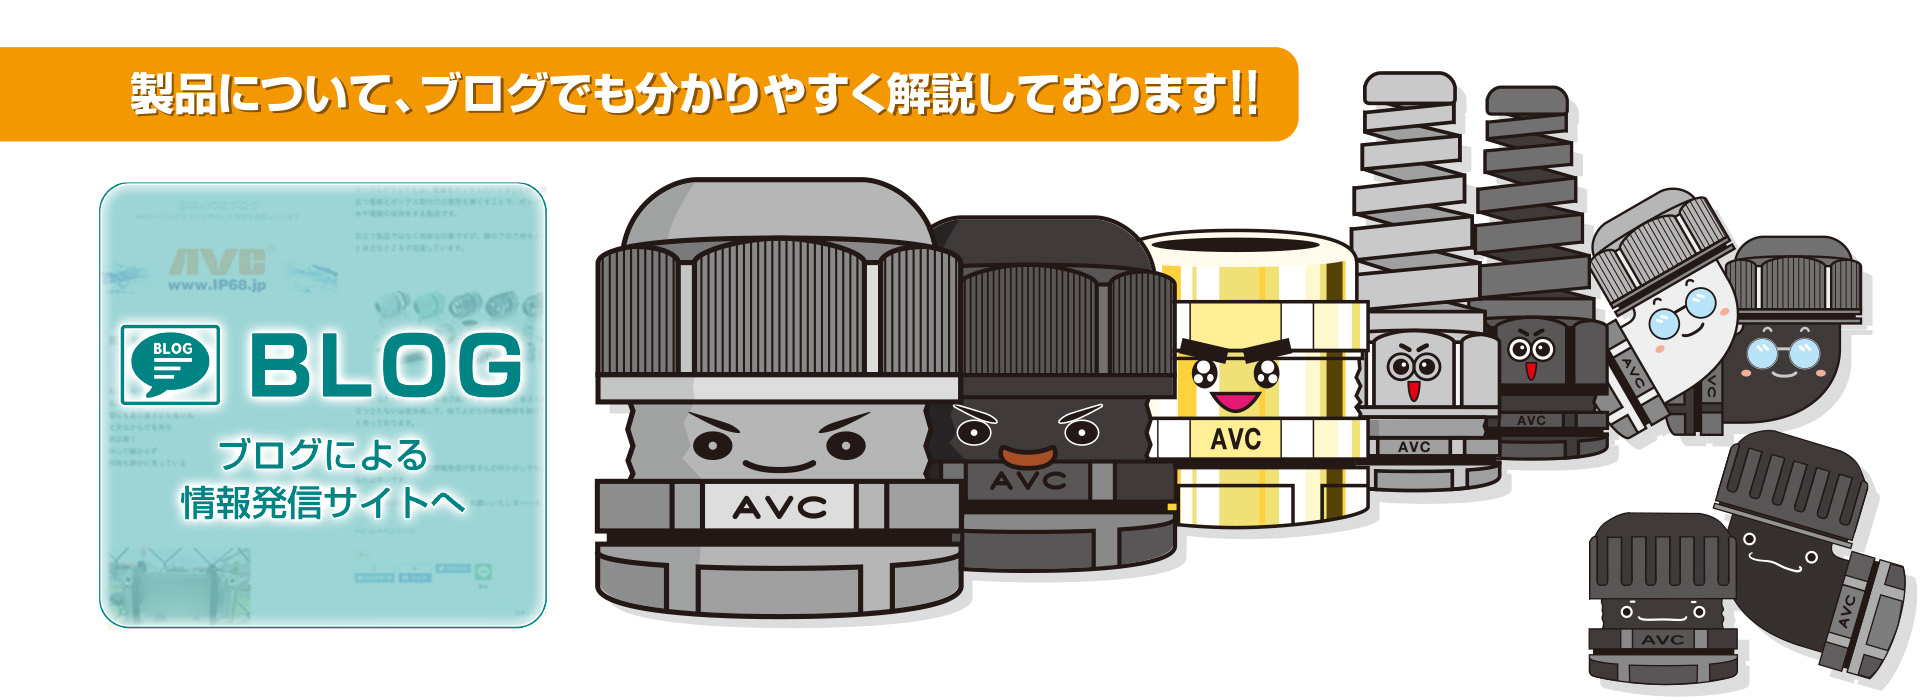 AVC Corporation of Japan - 水面下で使えるケーブルグランド。完全防水, IP68/69, グランド